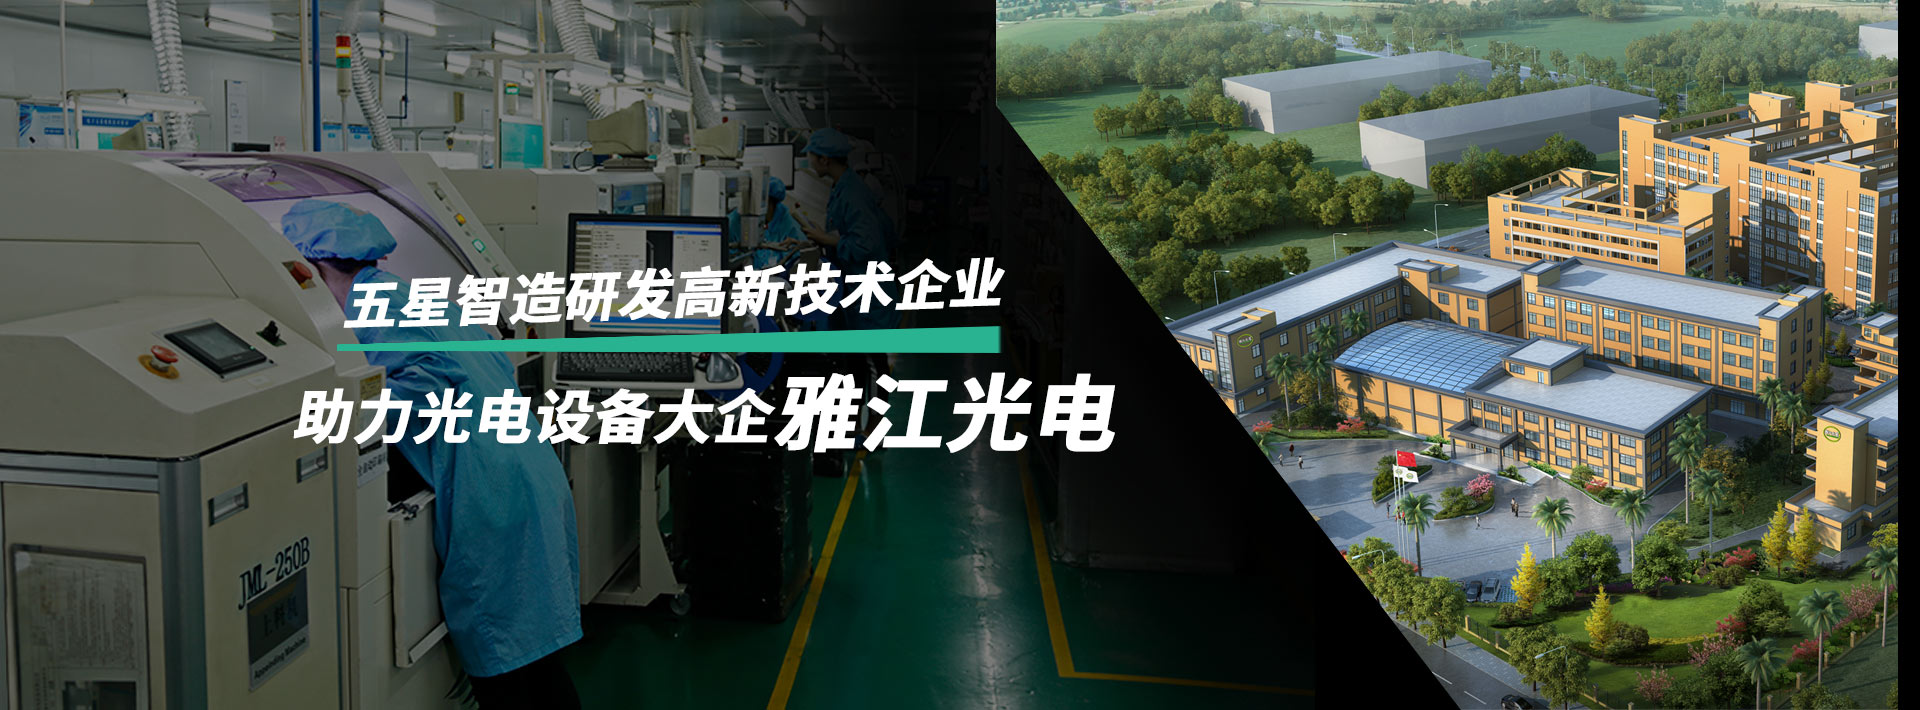 广东智造工场互联科技有限责任公司